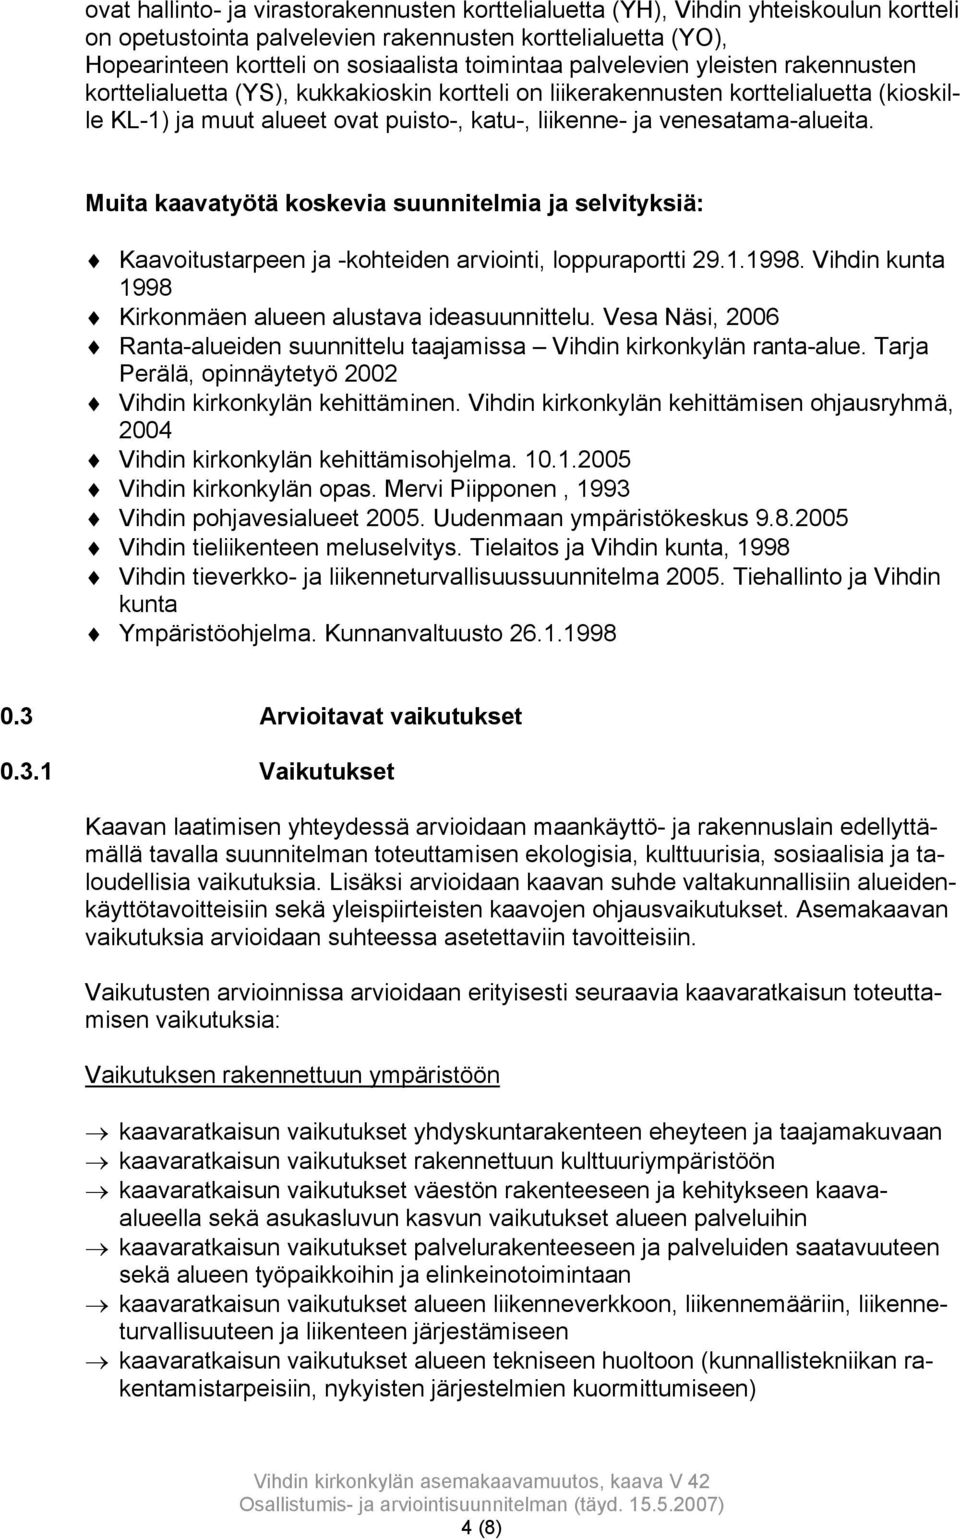 Muita kaavatyötä koskevia suunnitelmia ja selvityksiä: Kaavoitustarpeen ja -kohteiden arviointi, loppuraportti 29.1.1998. Vihdin kunta 1998 Kirkonmäen alueen alustava ideasuunnittelu.